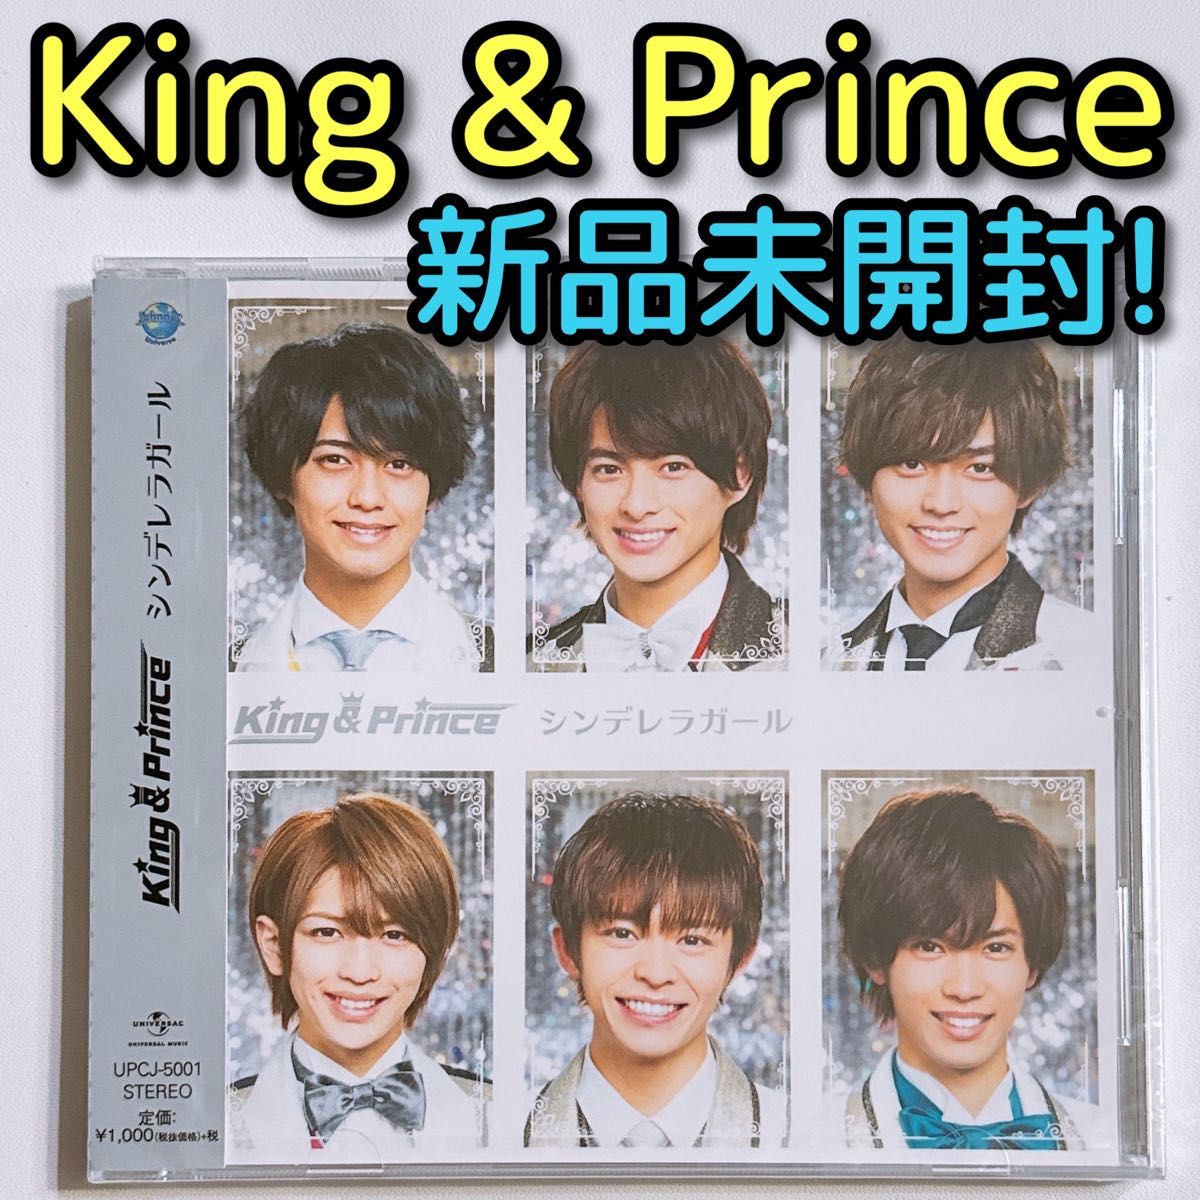 King & Prince シンデレラガール 通常盤 新品未開封 CD 永瀬廉